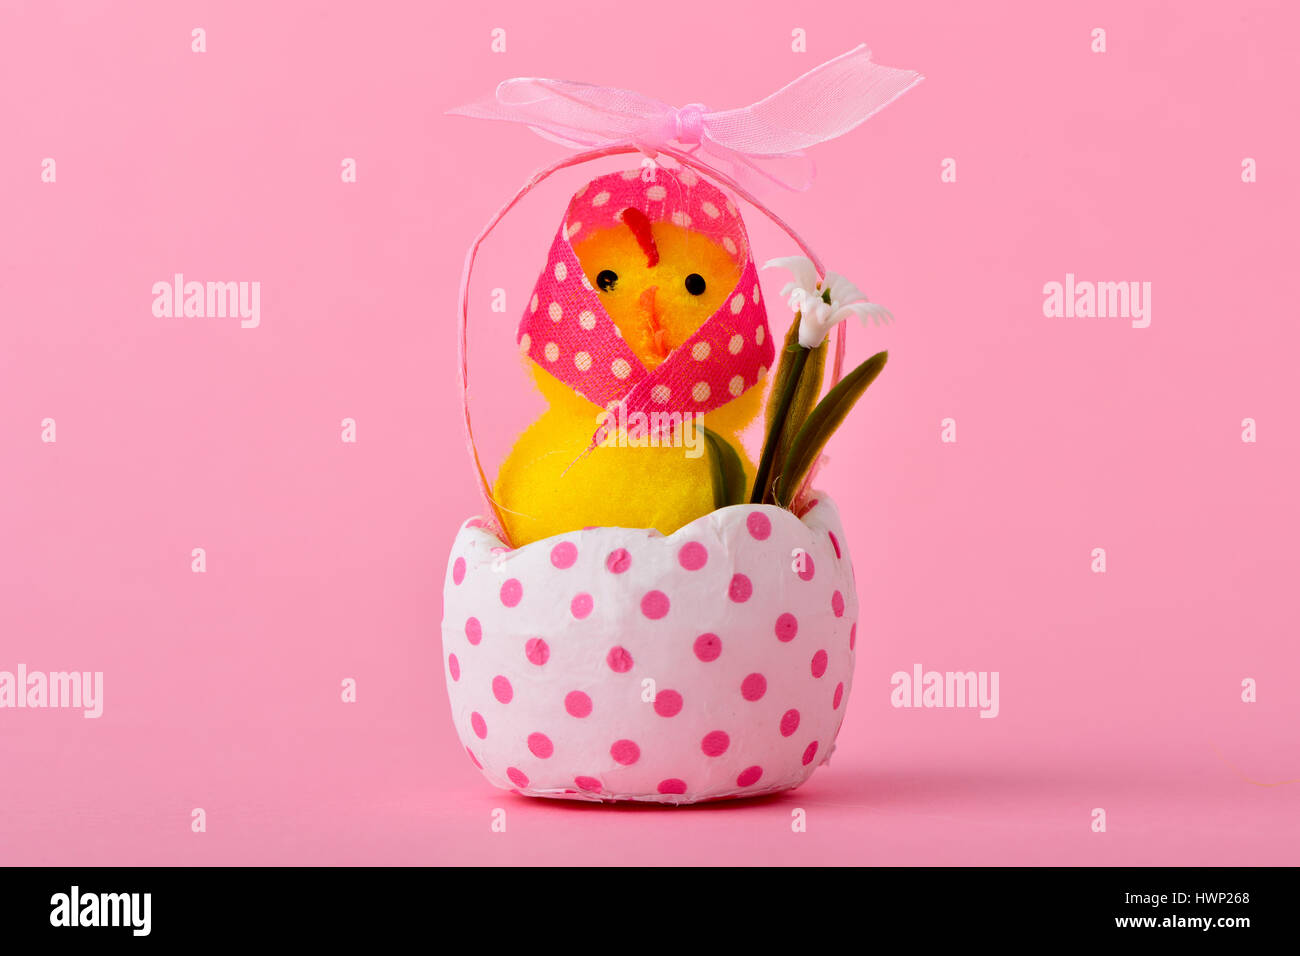 Una simpatica signora teddy chick indossando un velo di colore rosa modellato con puntini bianchi che emergono da un bianco incrinato guscio d'uovo modellati con punti rosa, contro un Foto Stock